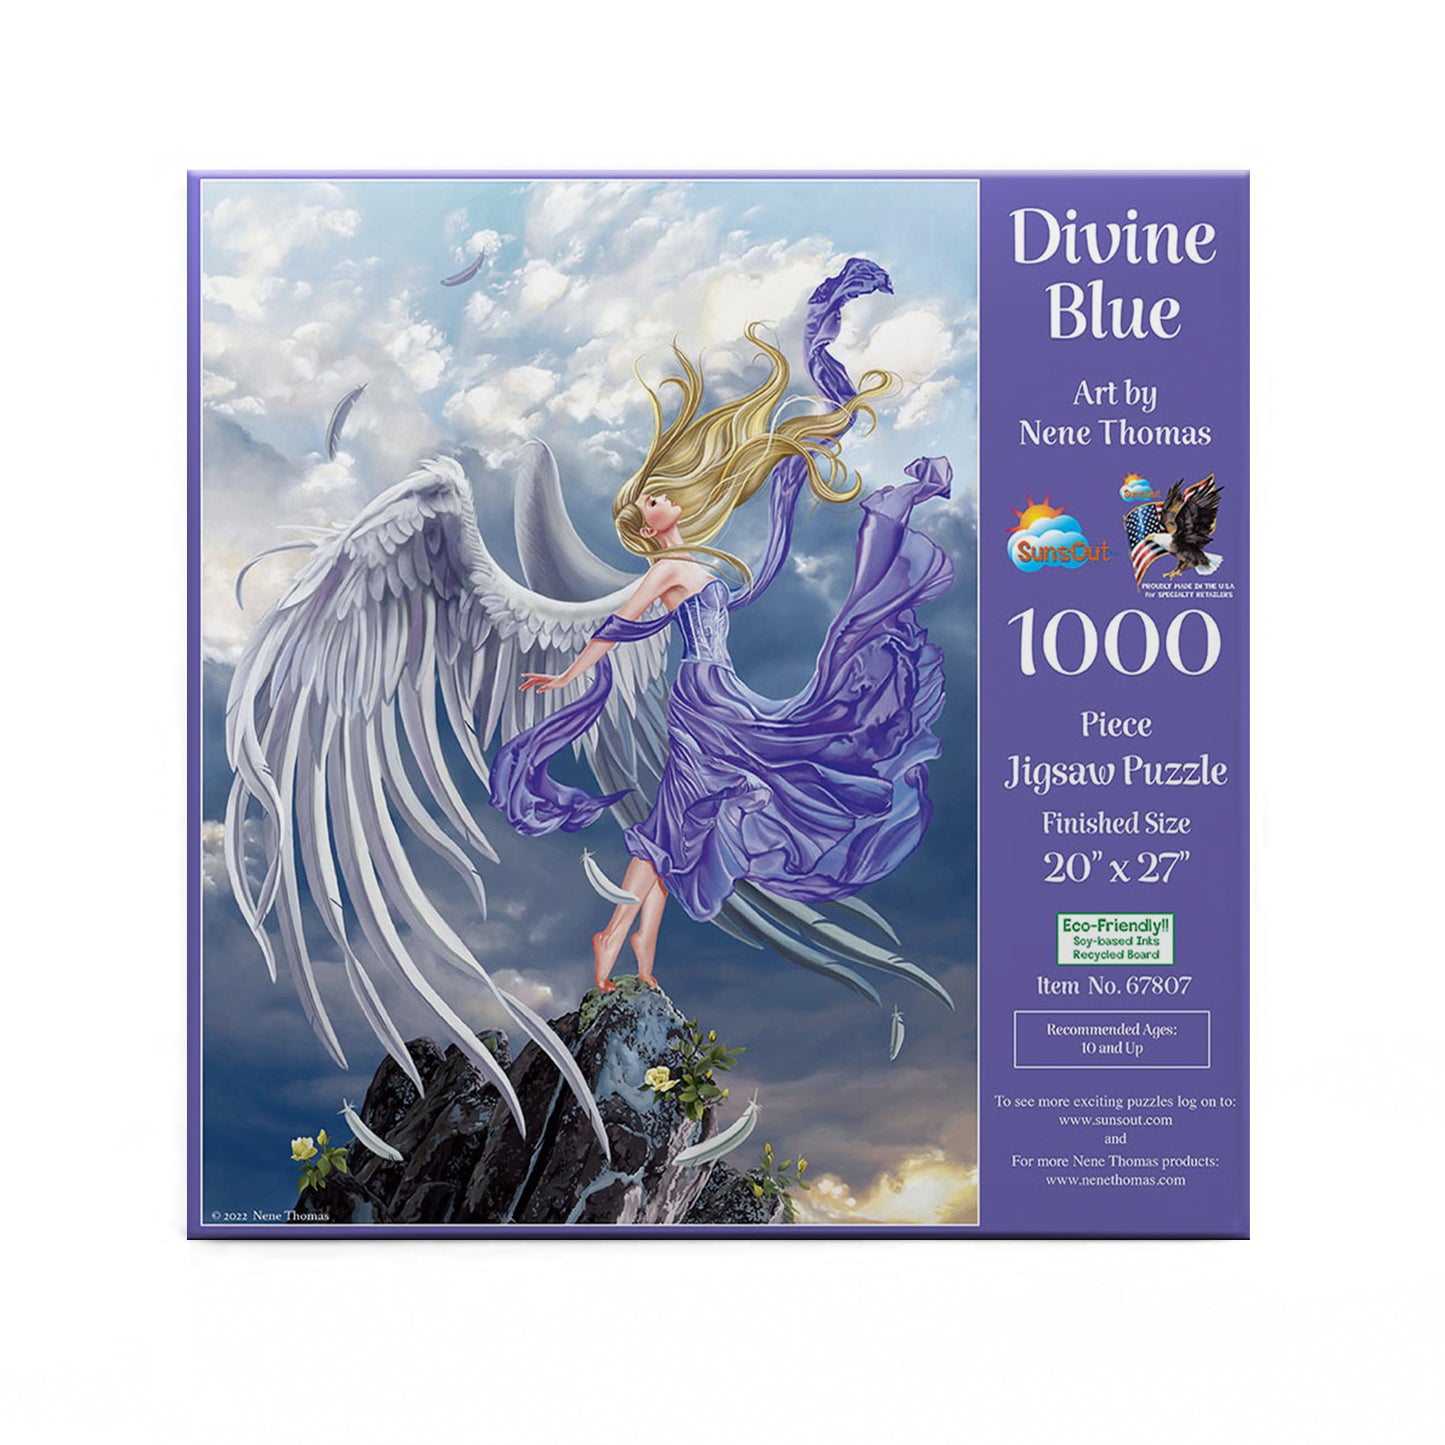 Divine Blue af Nene Thomas, 1000 brikker puslespil